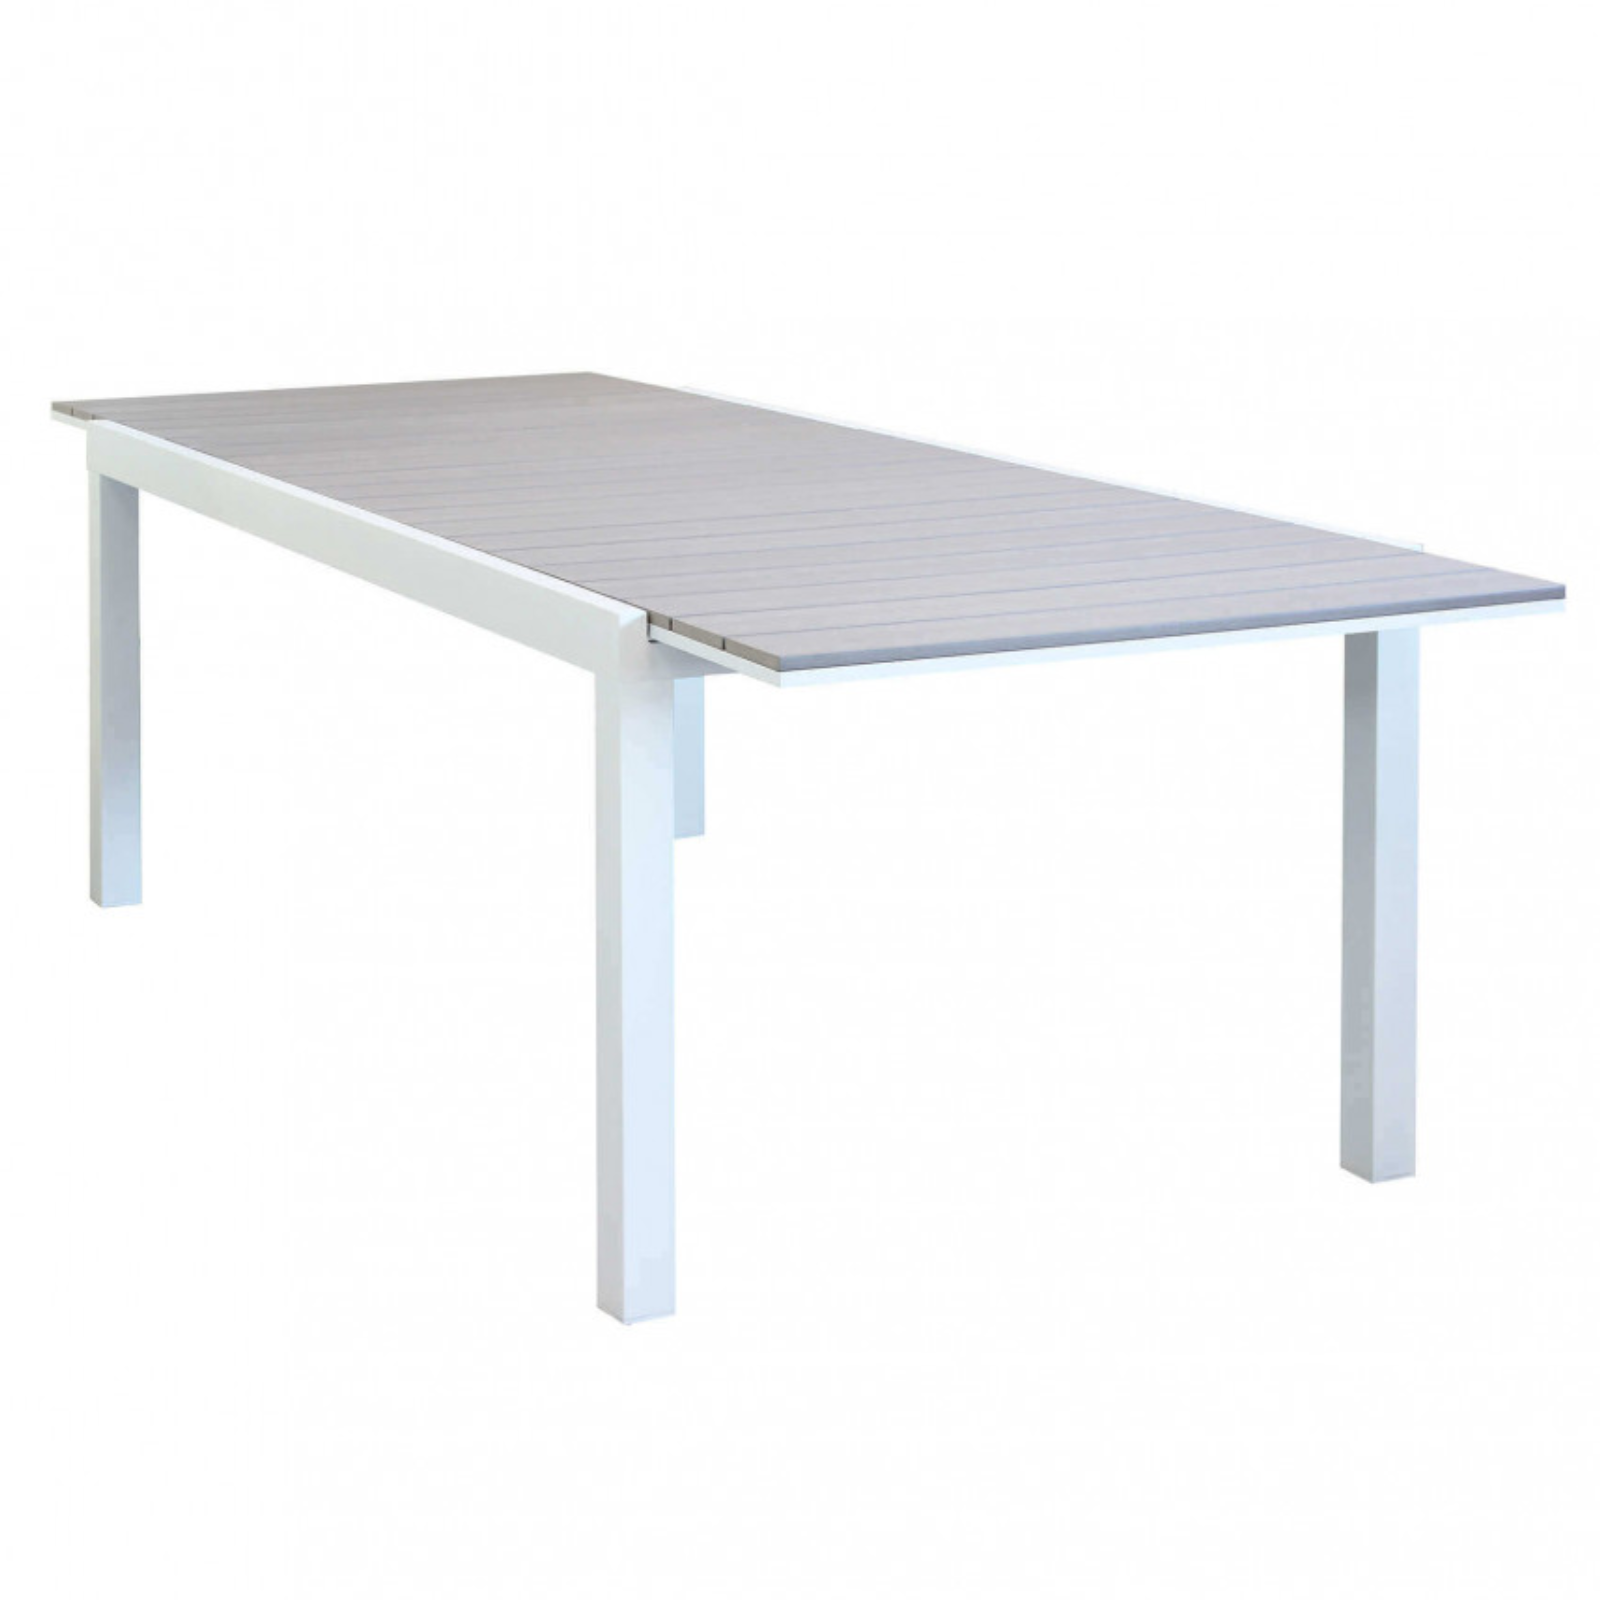 Tavolo allungabile rettangolare da esterno struttura in alluminio e piano in polywood - Penta